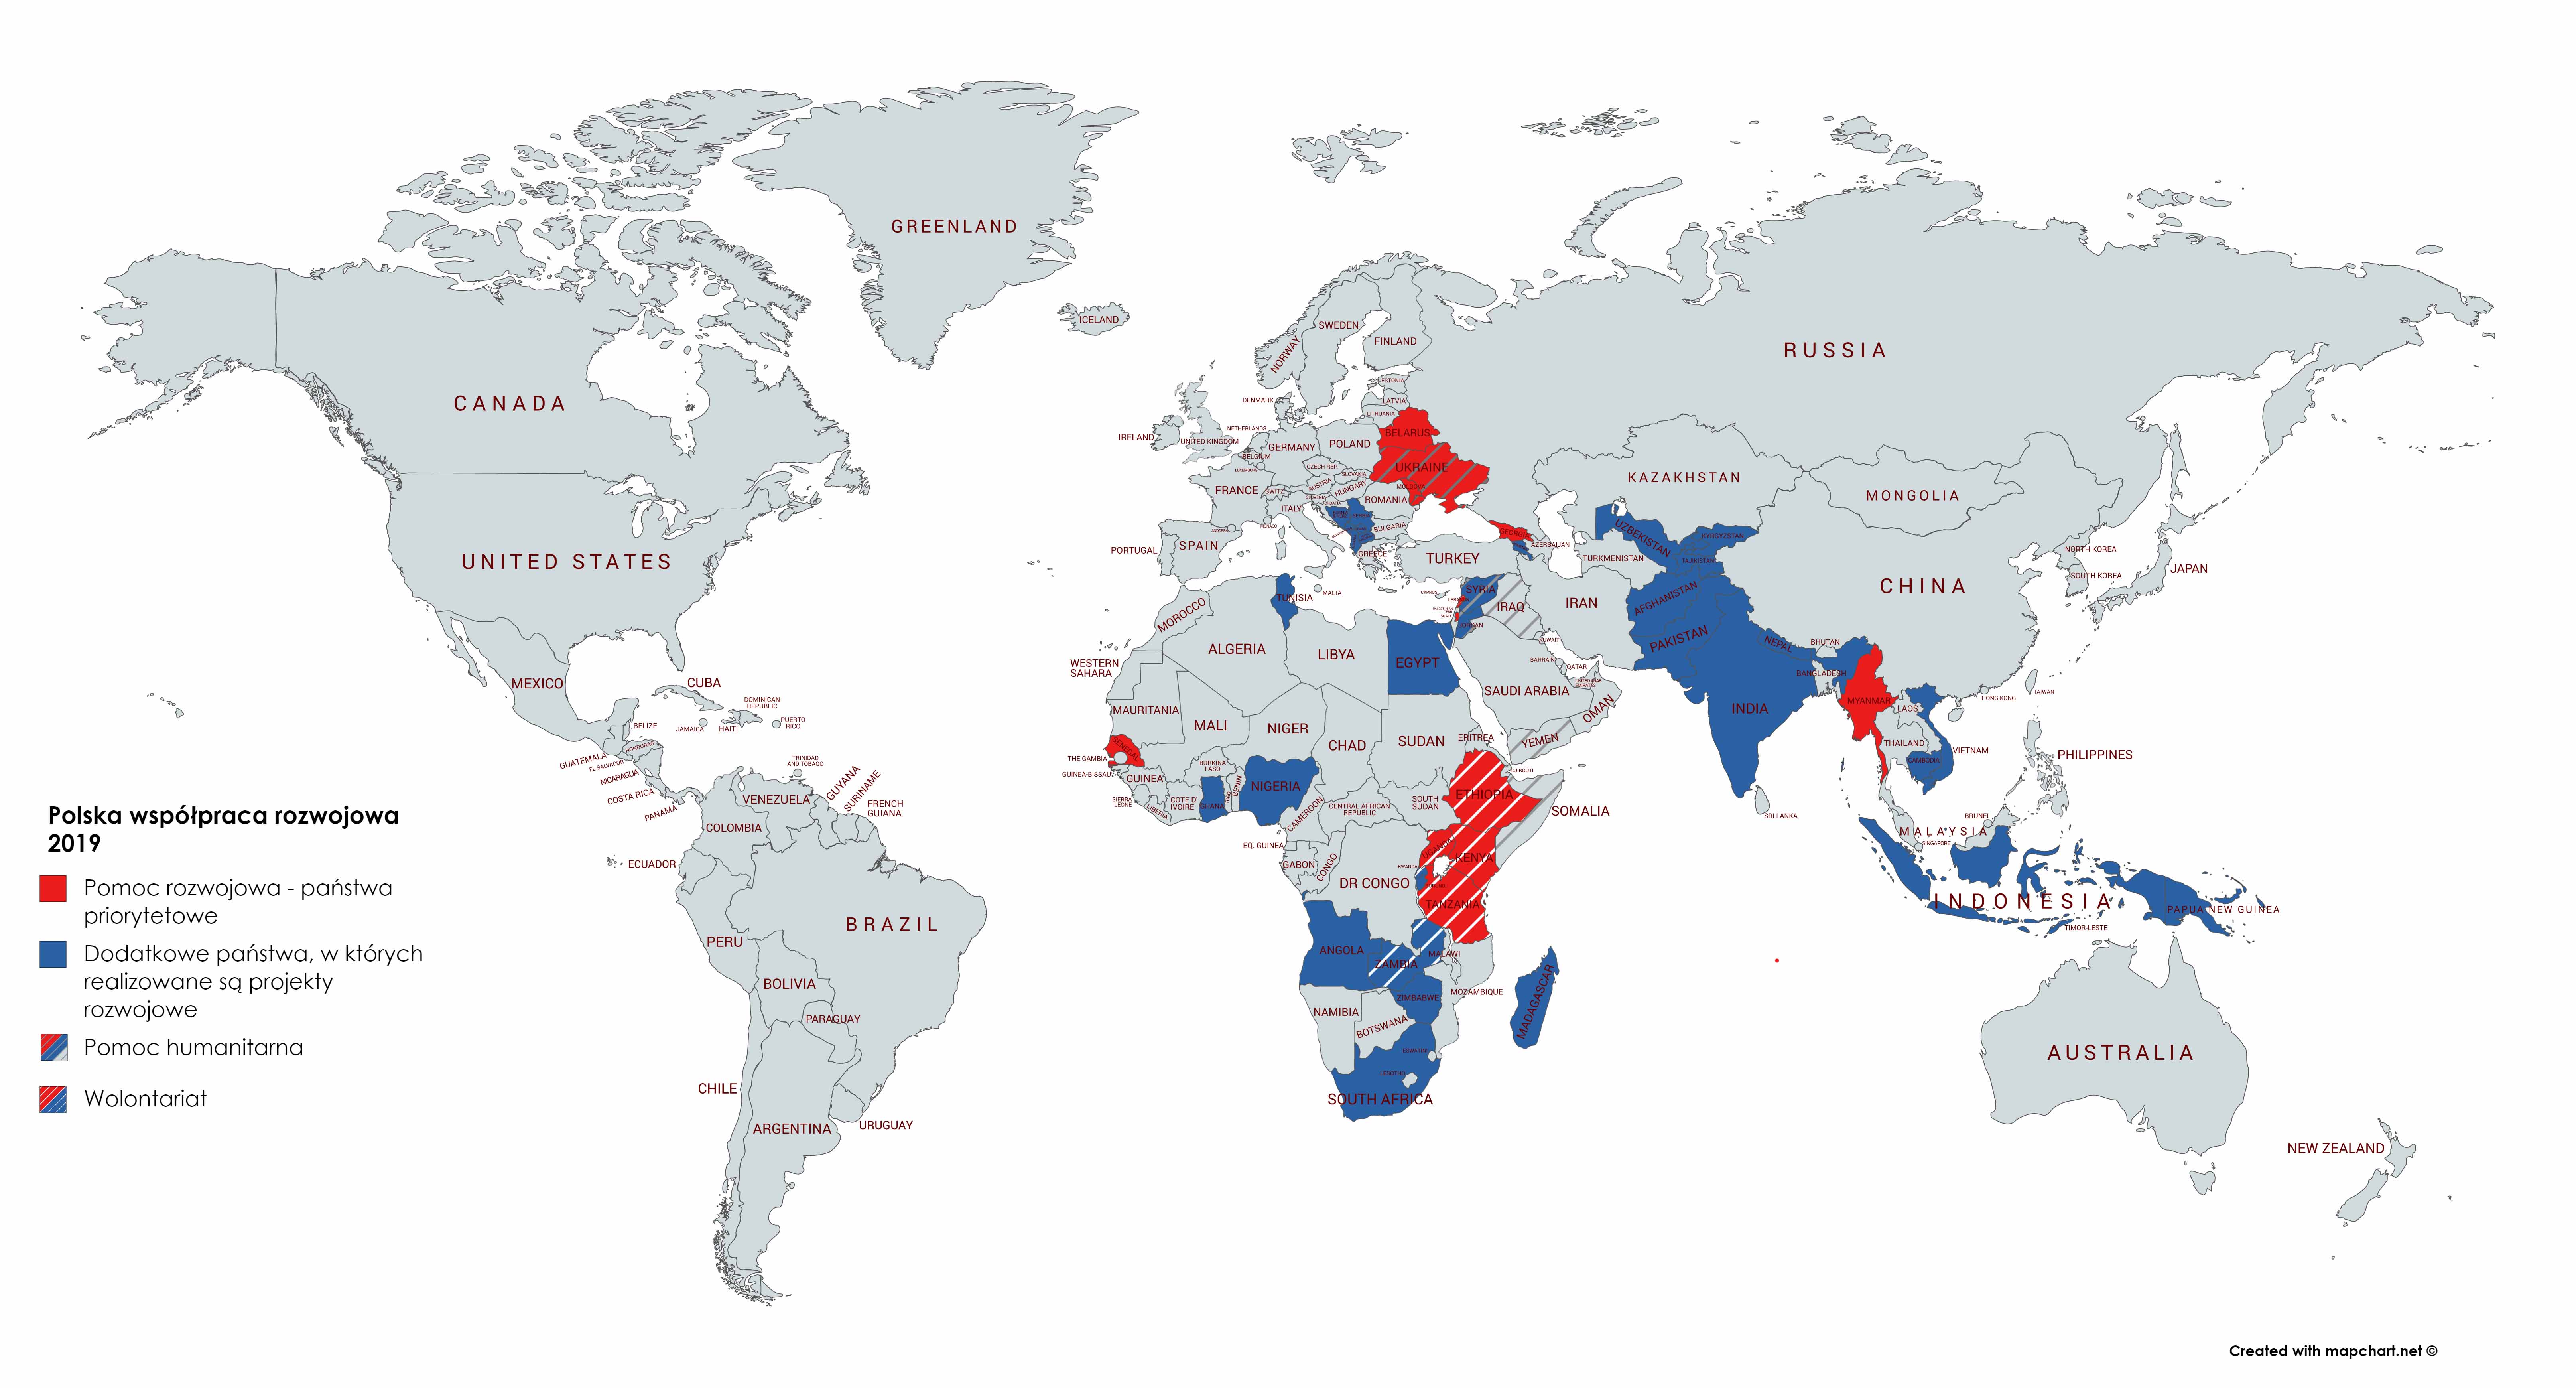 Mapa świata z zaznaczonymi państwami, w których realizowane są działania ze środków Polskiej pomocy